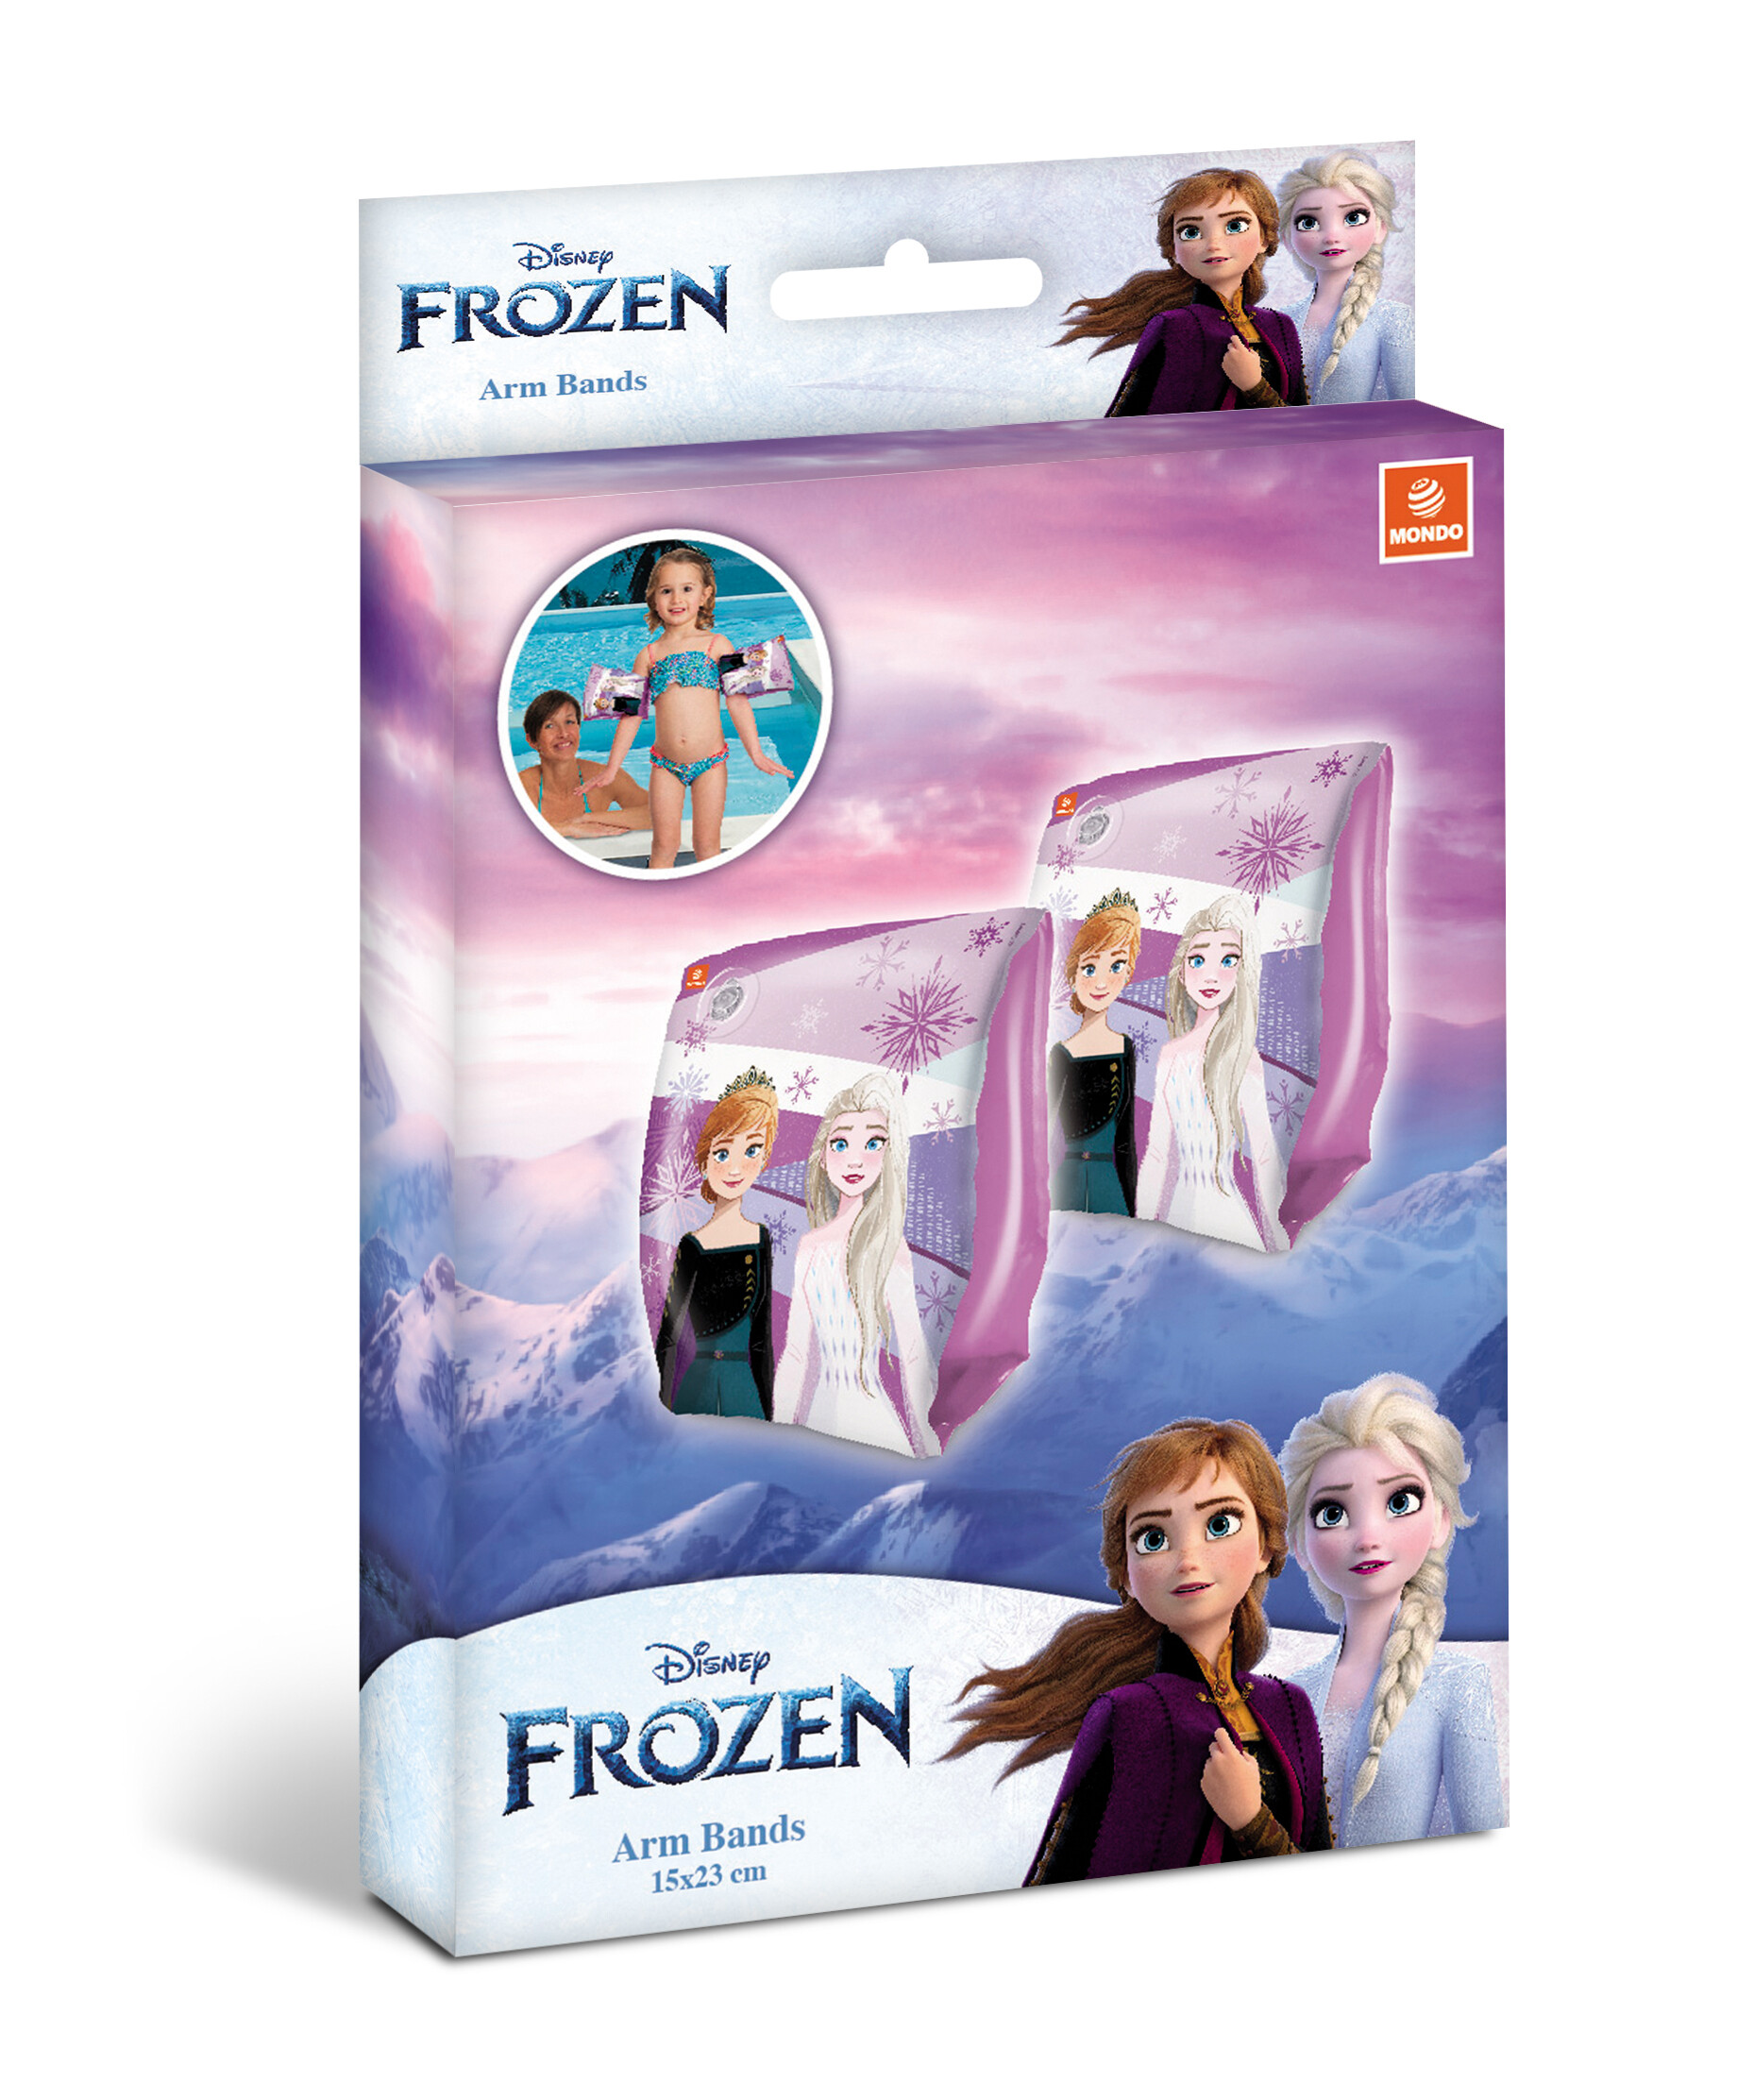 Frozen arm bands - braccioli di sicurezza per bambini - materiale pvc - adatti a bambini da 2 a 6 anni con peso 6-20 kg - DISNEY PRINCESS, Frozen